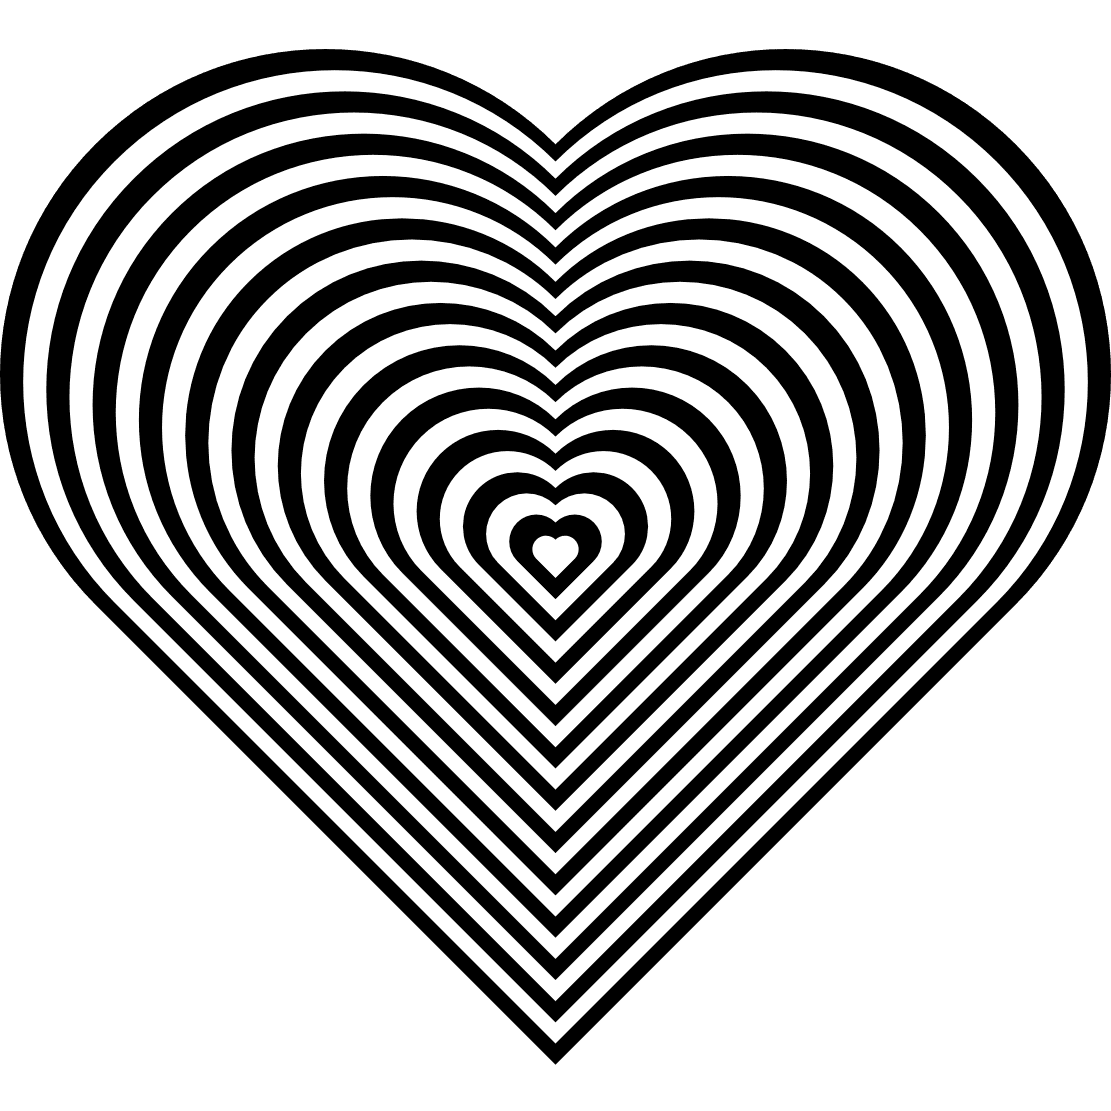 Heart Mandalas Free Printable Coloring Page